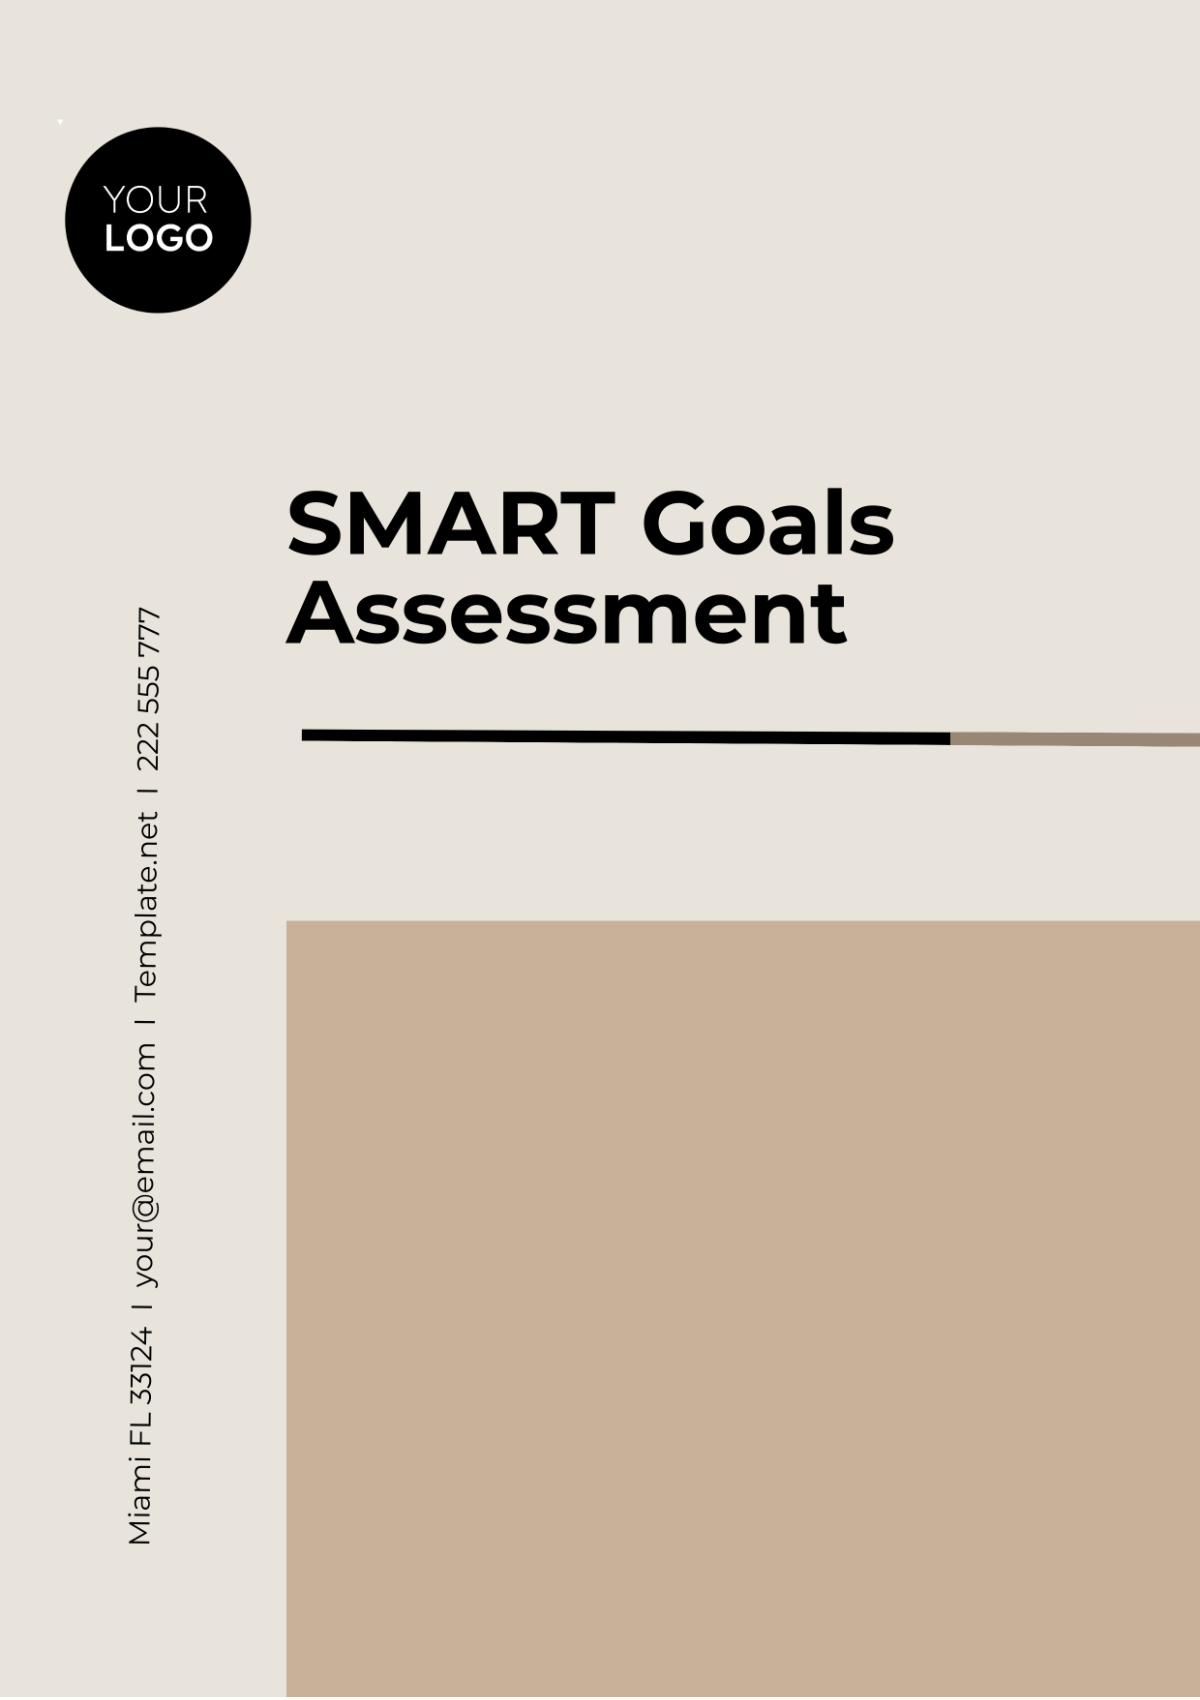 SMART Goals Assessment Template